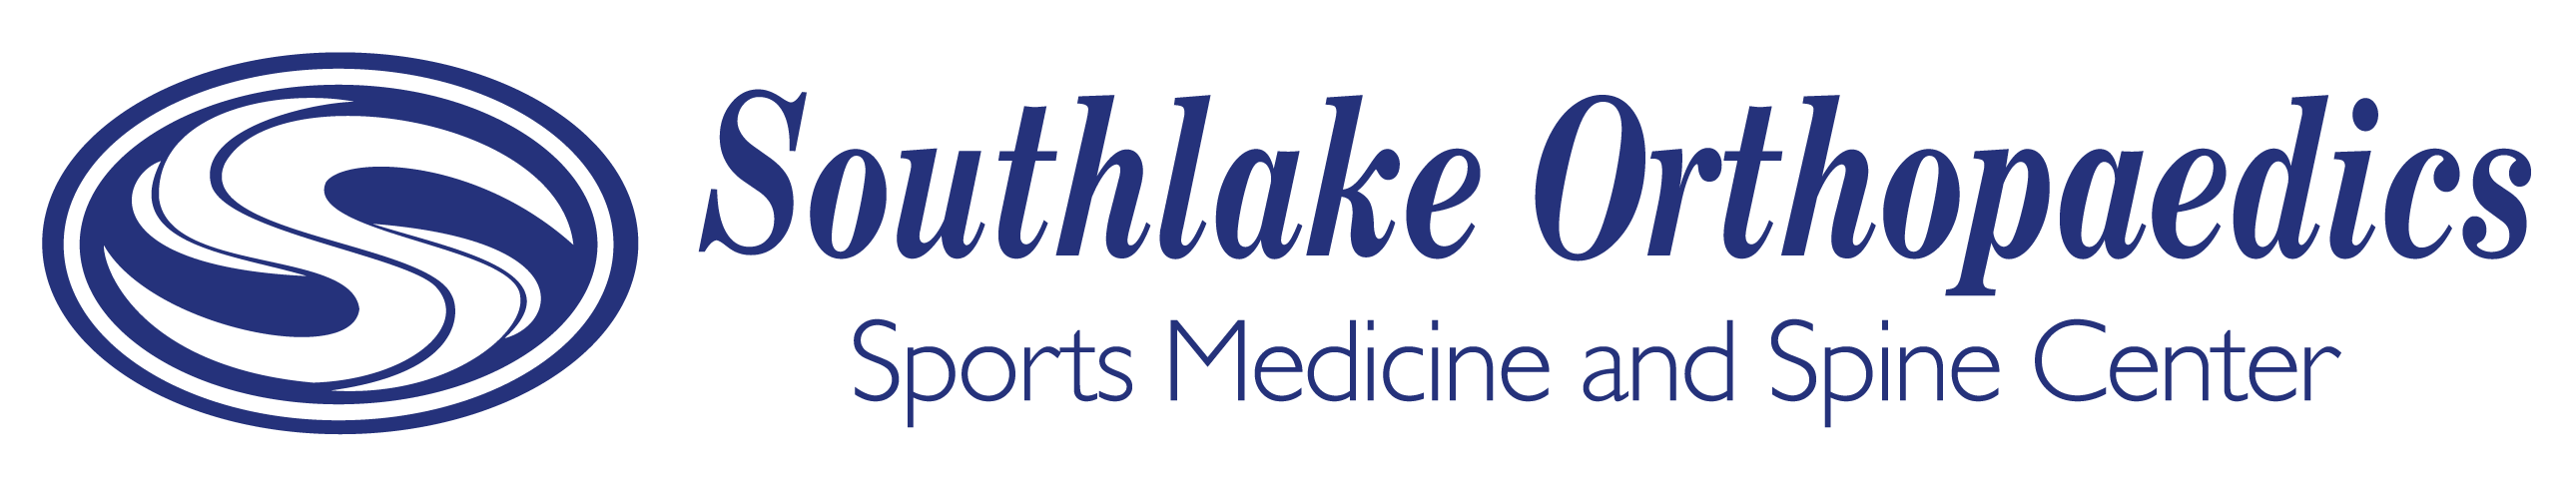 Southlake Orthopaedics logo 2